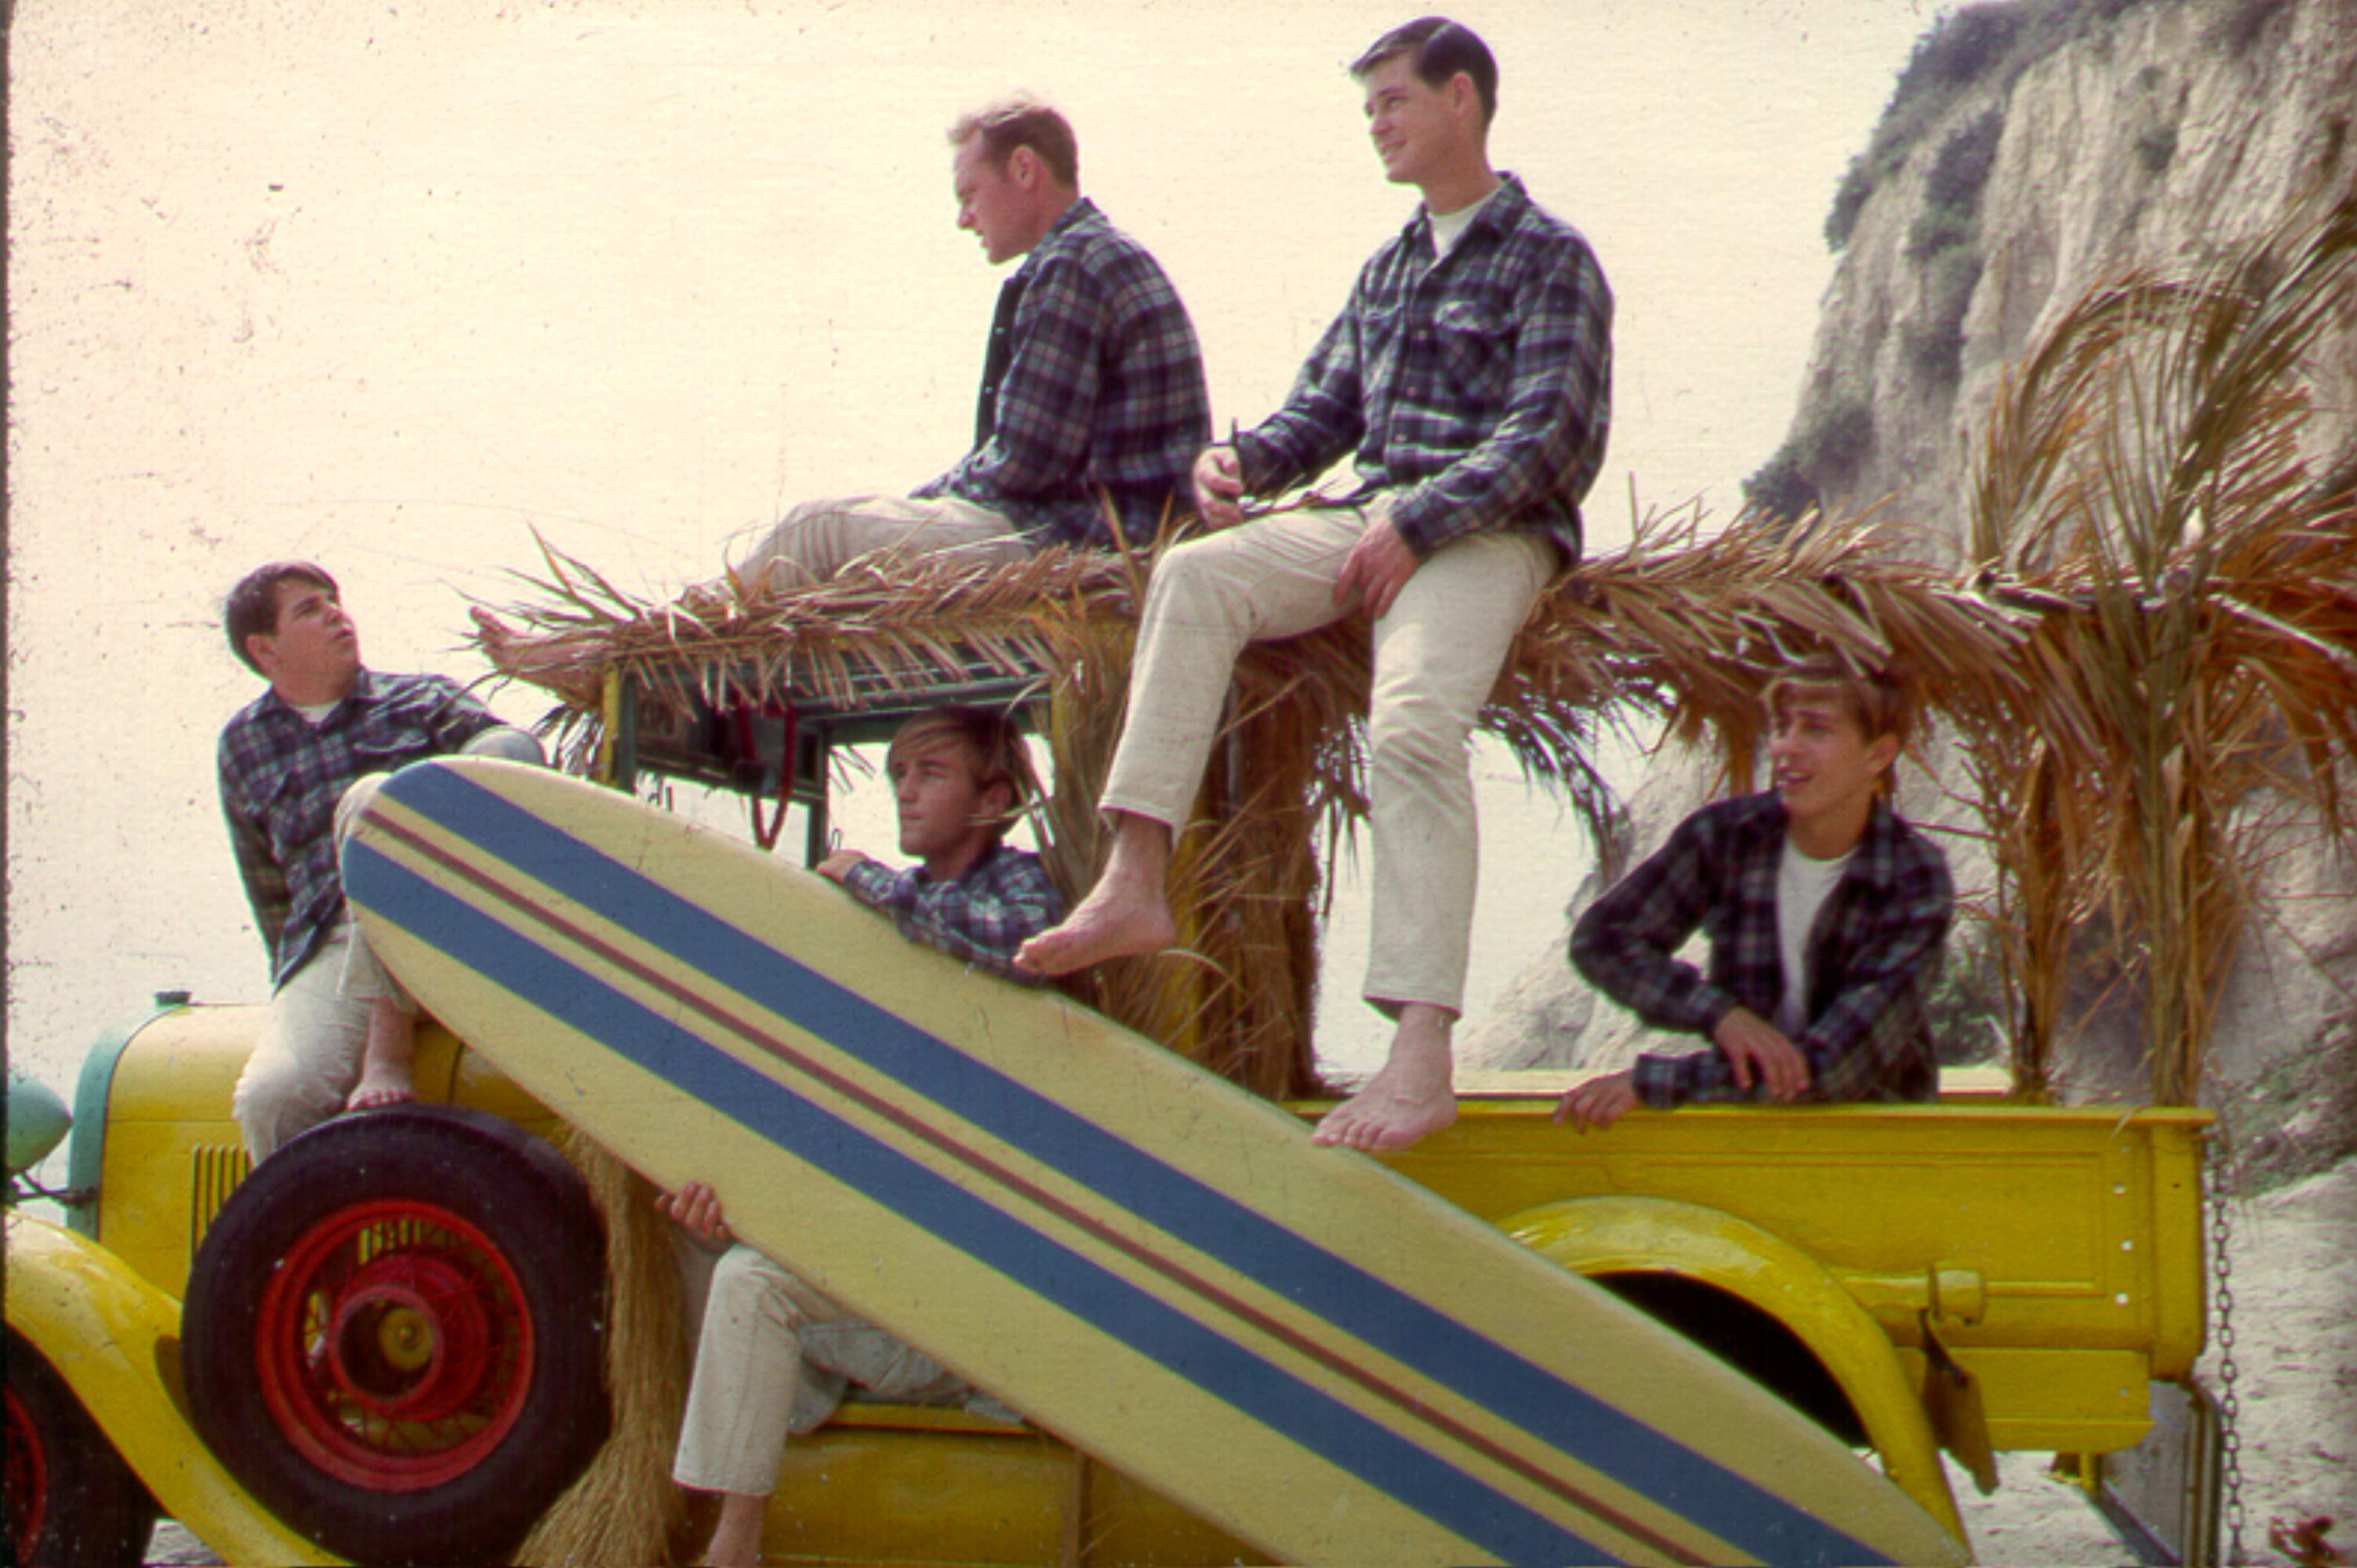 The Beach Boys with a car